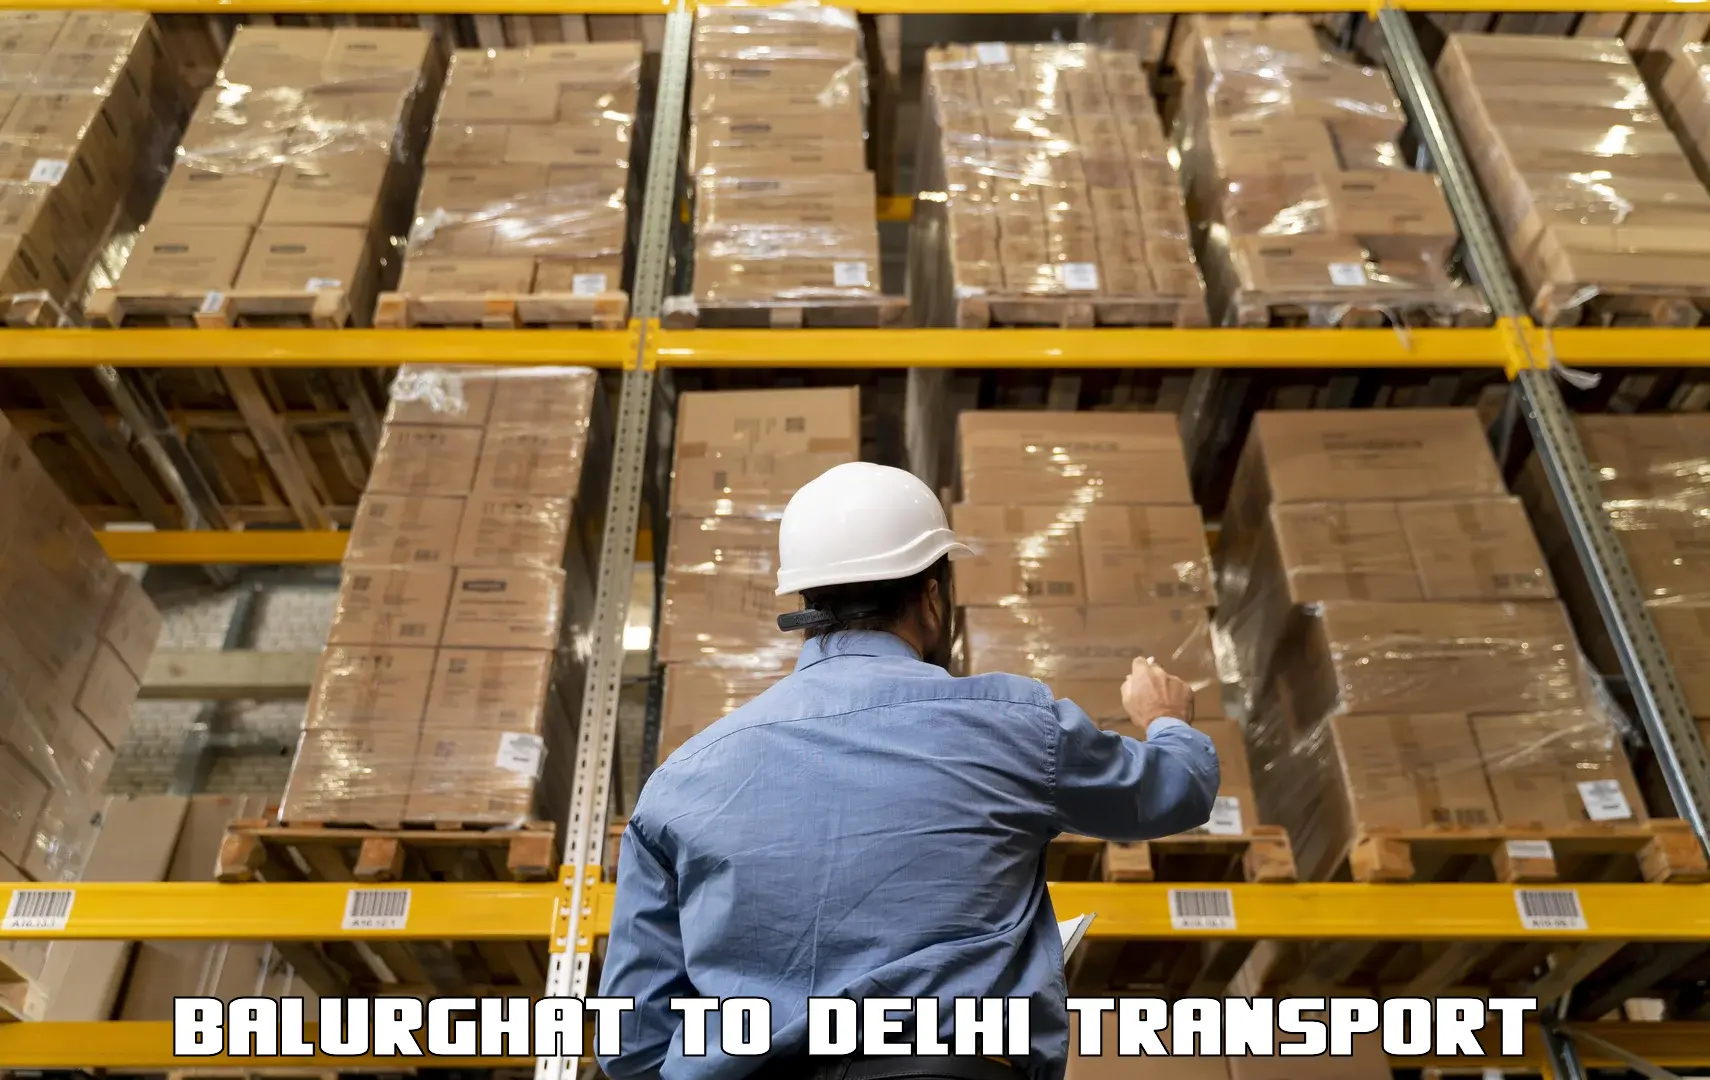 Shipping partner Balurghat to University of Delhi